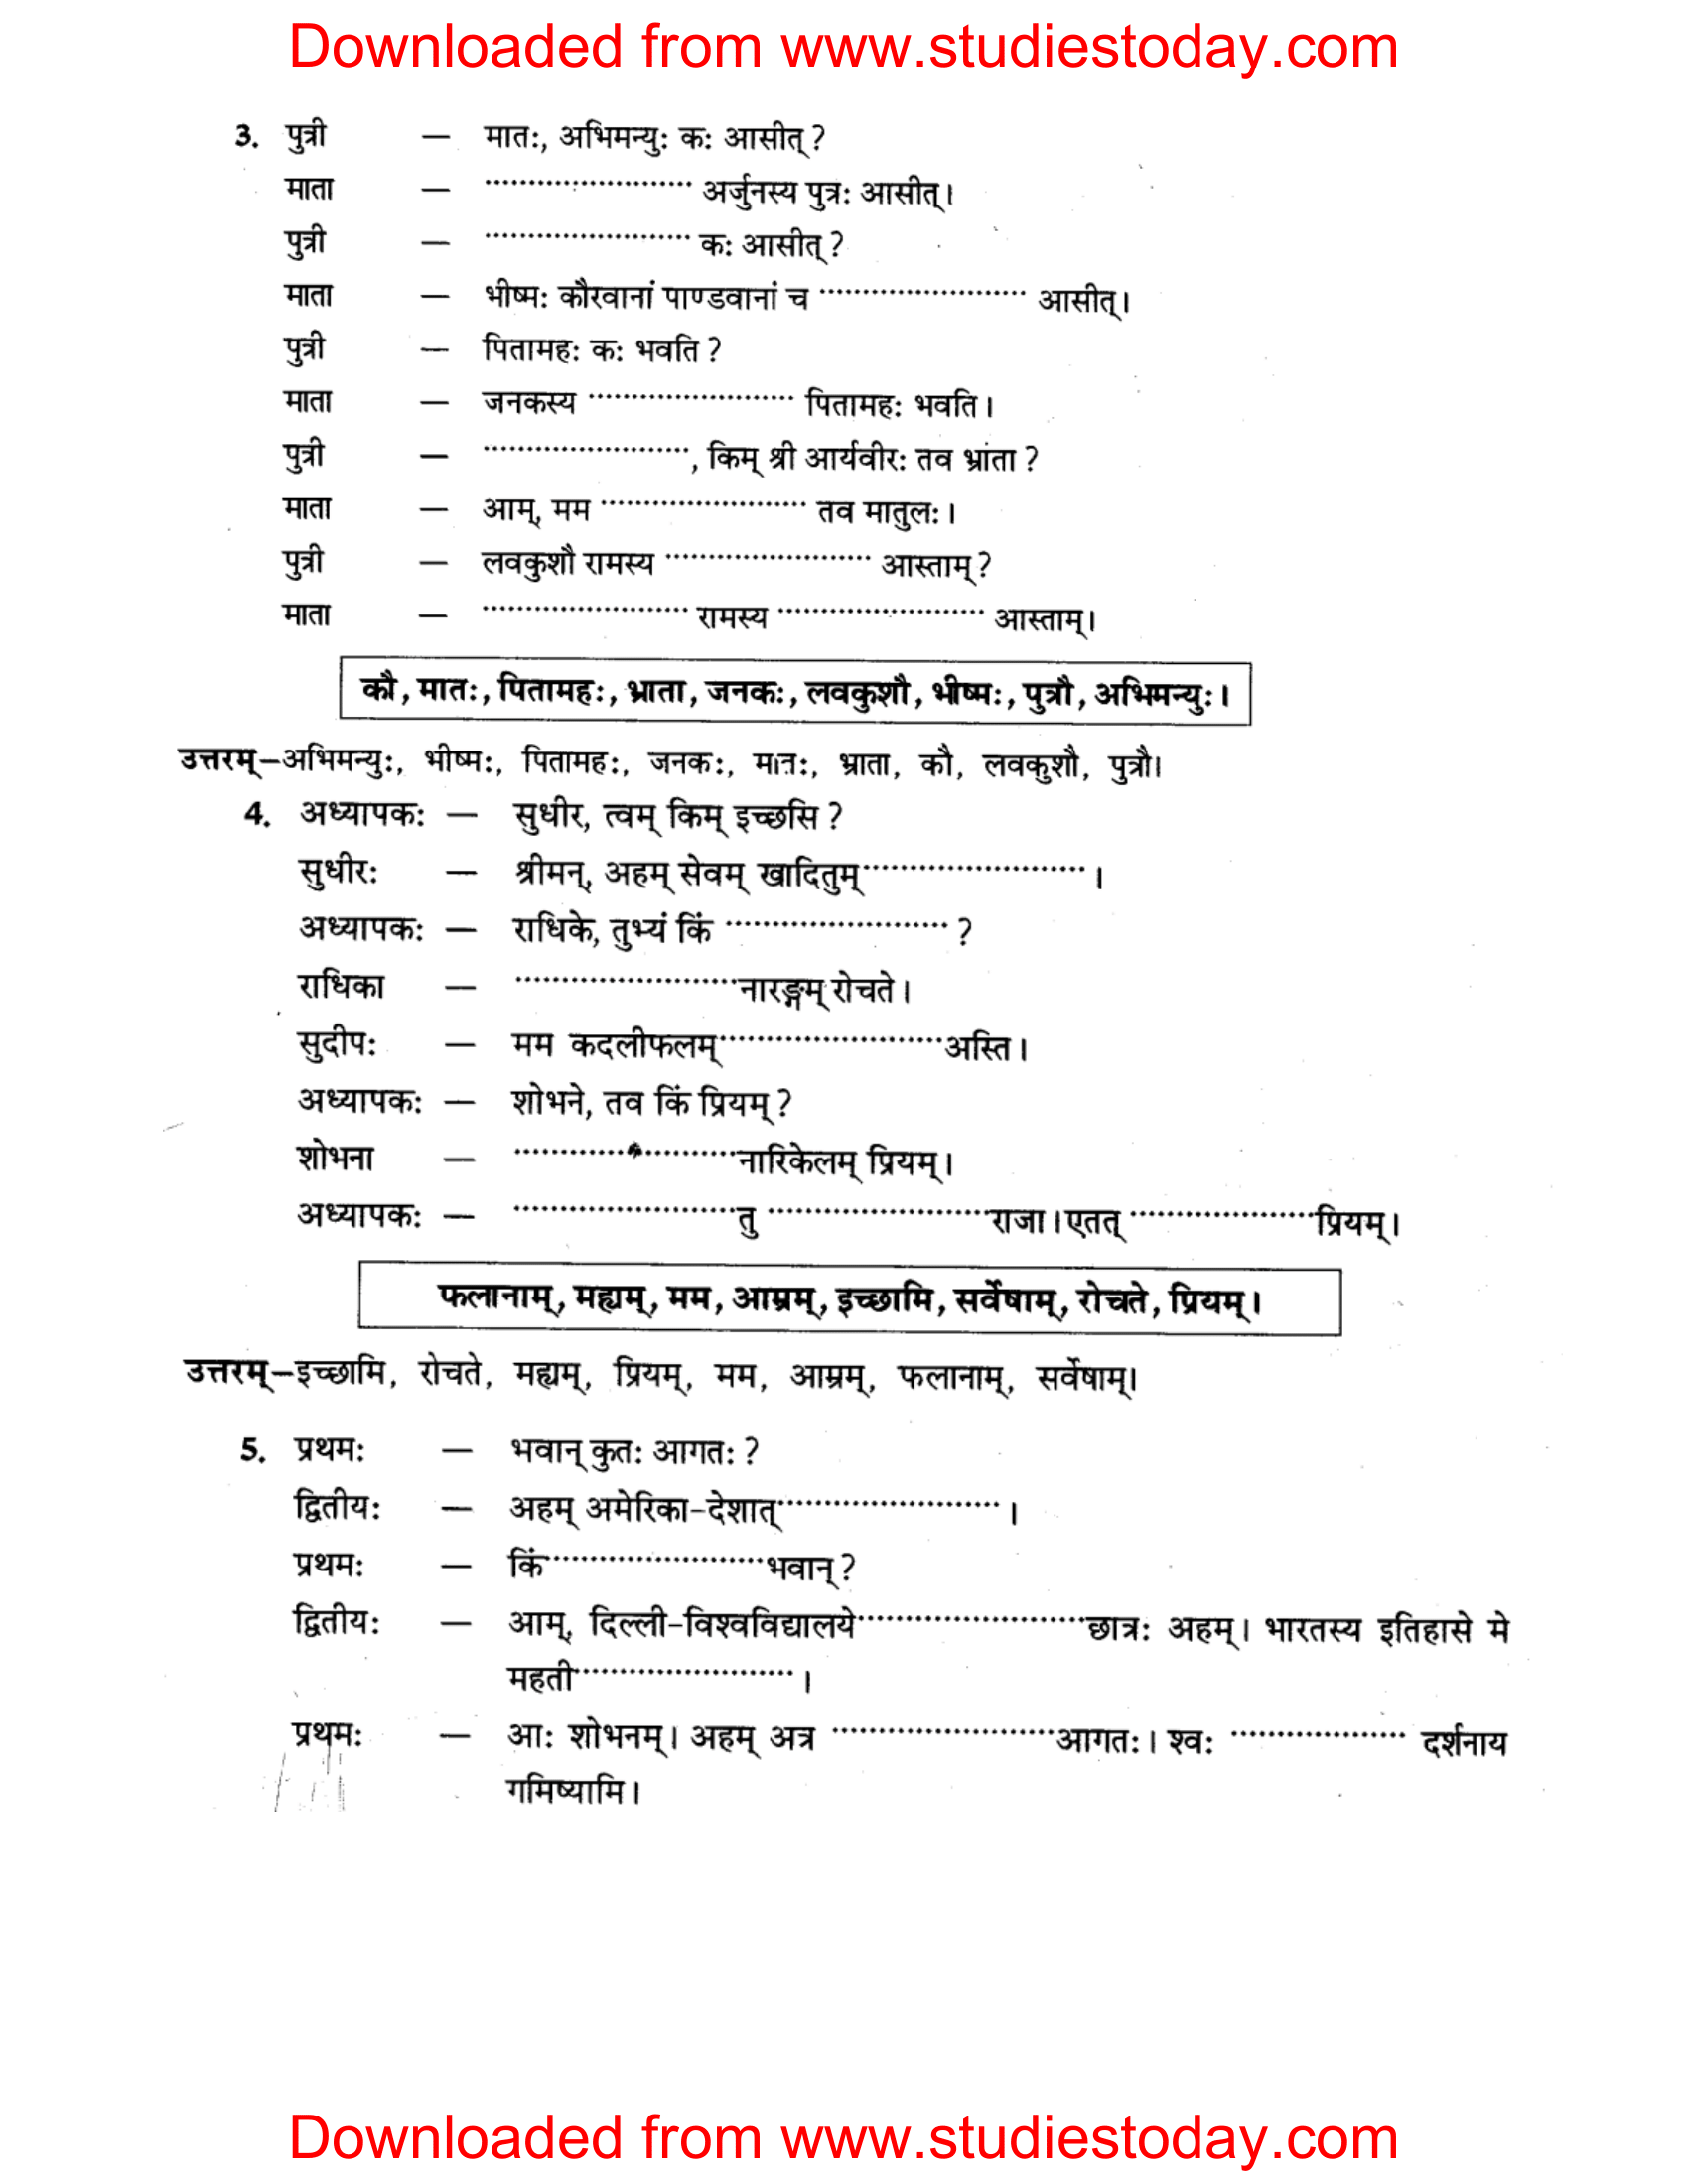 ncert-solutions-class-8-sanskrit-chapter-12-sanvadlekhnam-tatha-anuched-lekhnam-2